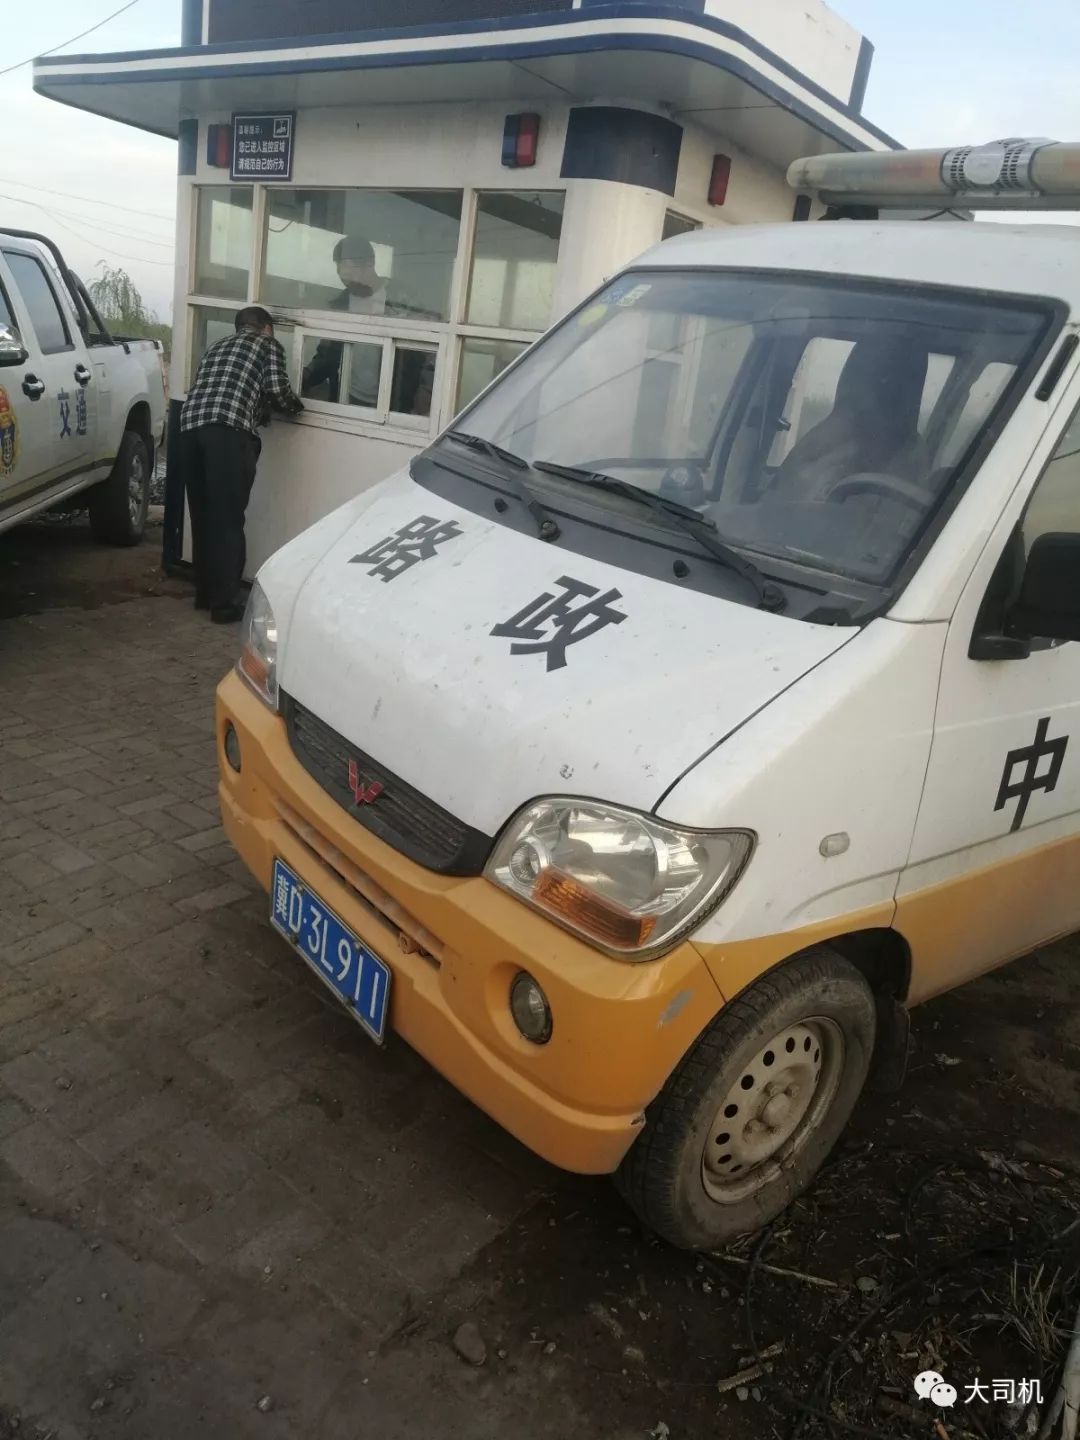 河北成安县交通局:喷标志,加警灯,个人车变身执法车!